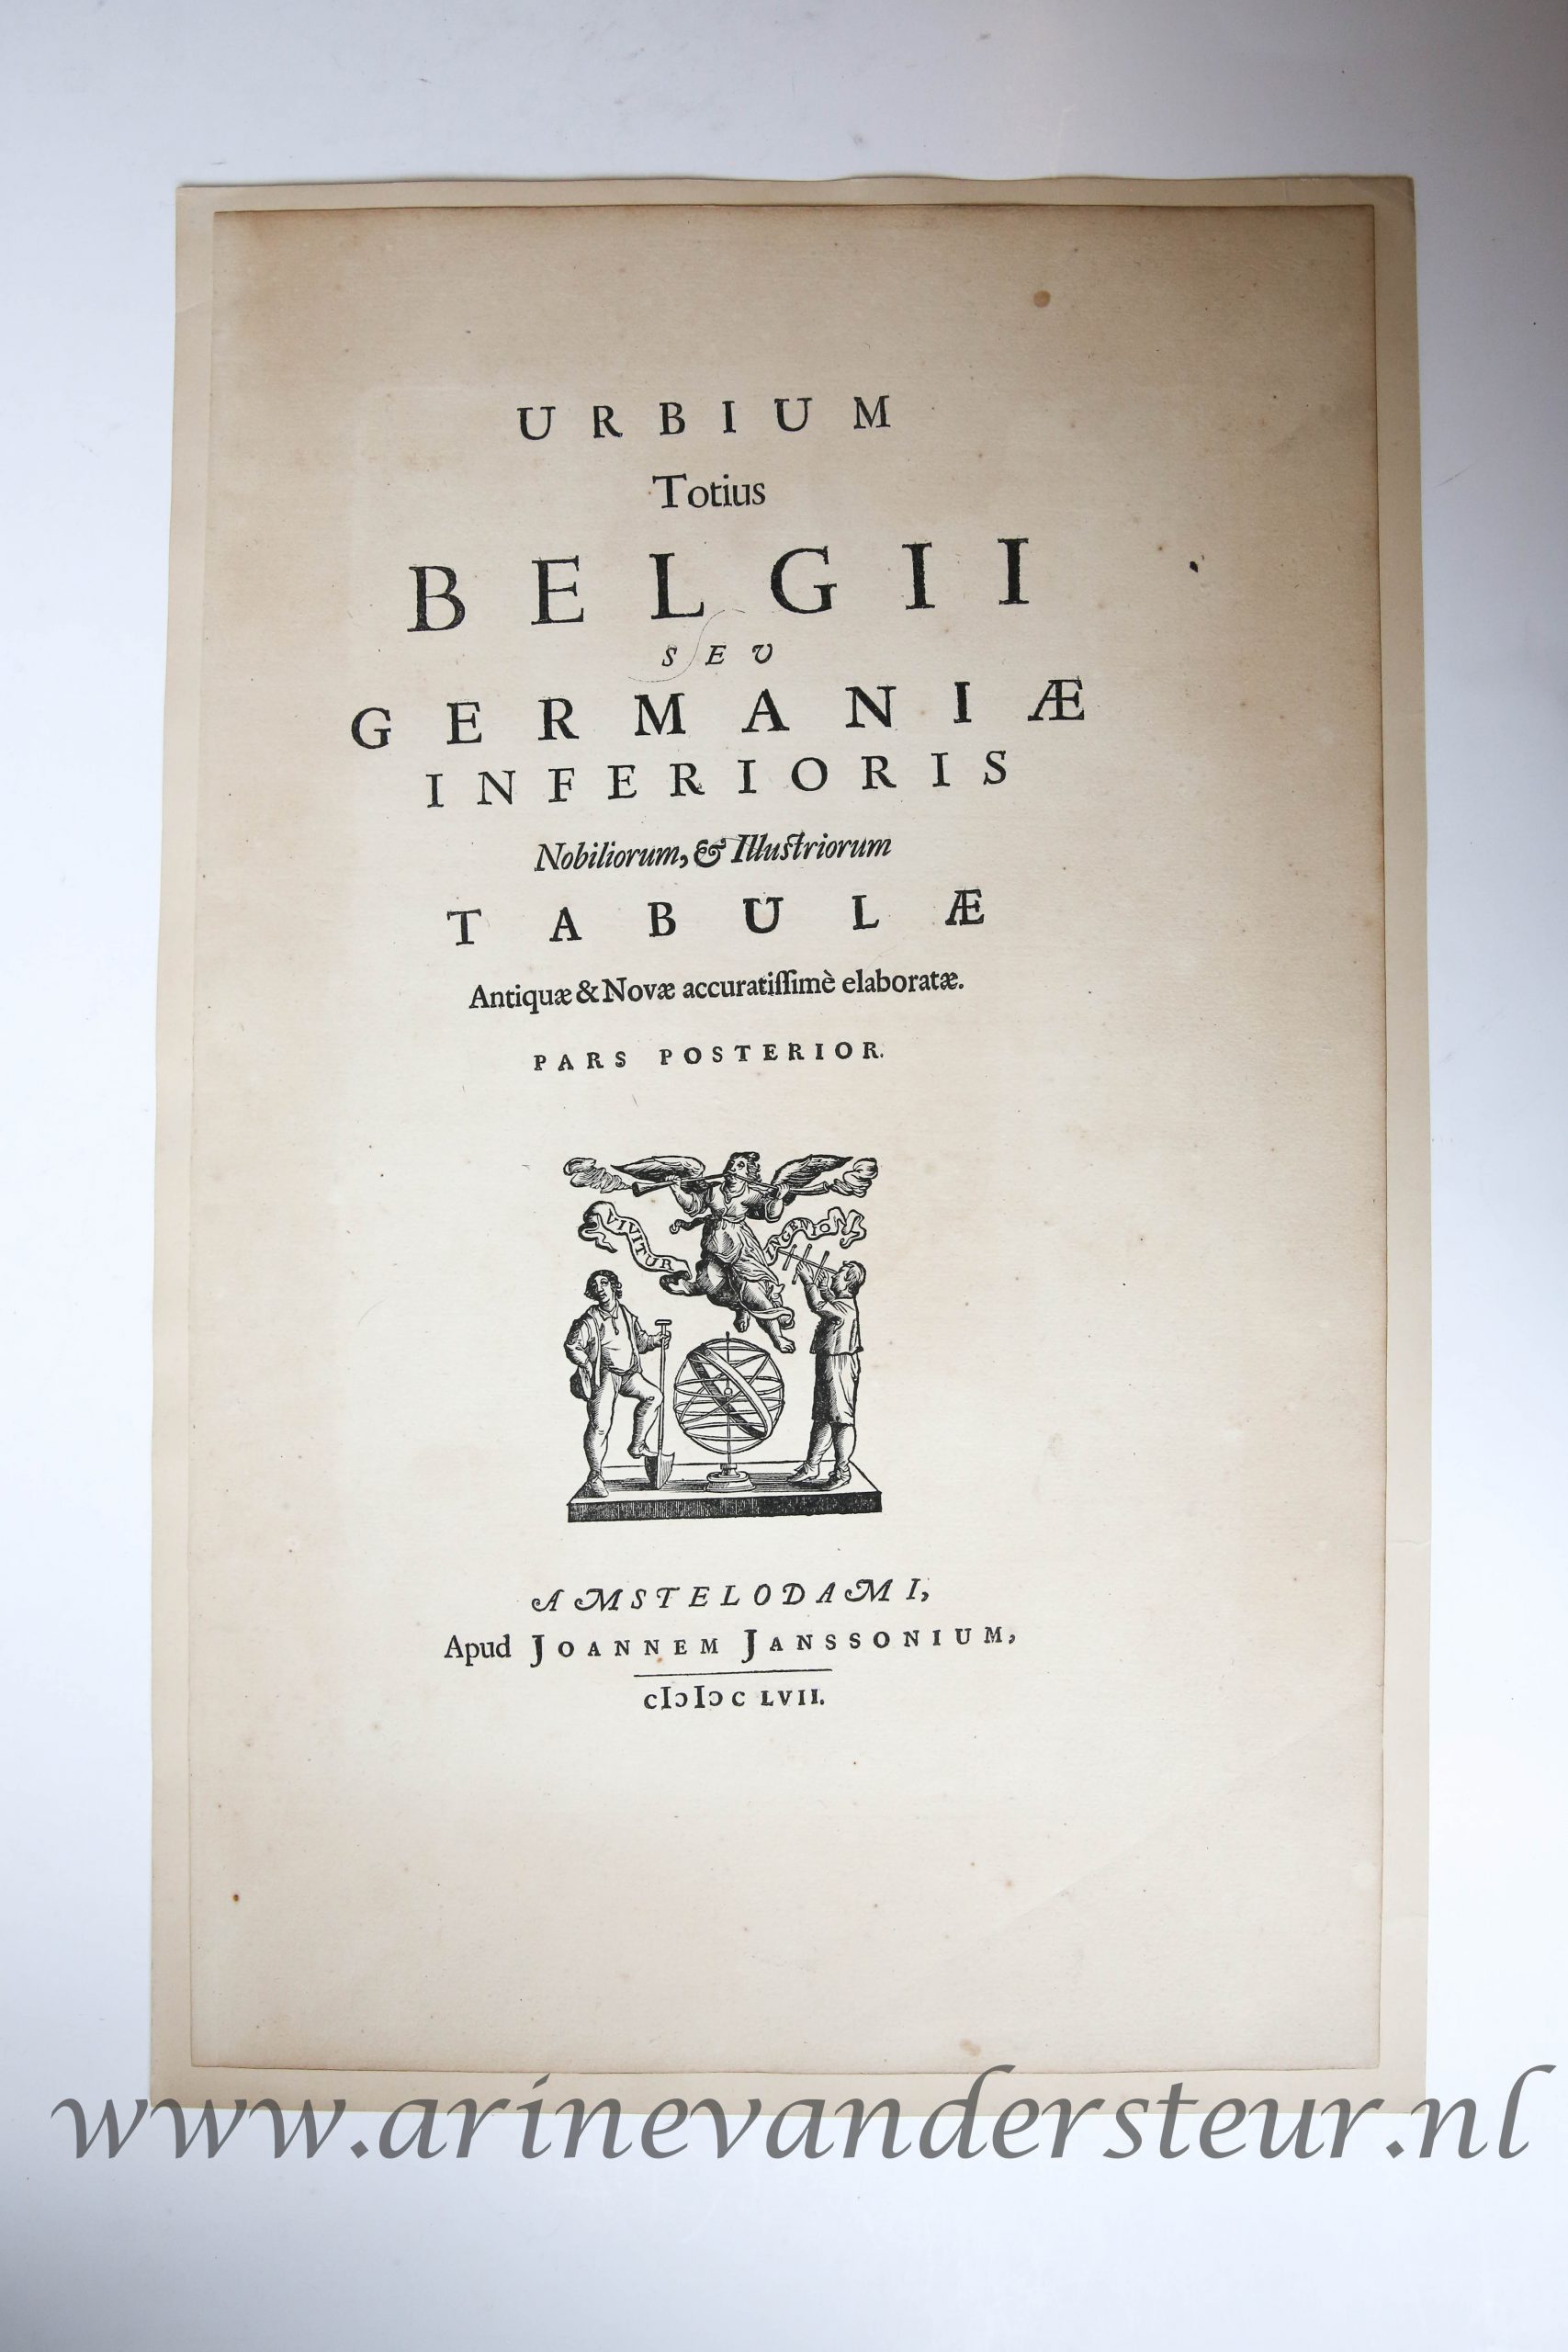 [Antique title page, 1657] URBIUM Totius BELGII SEV GERMANIAE INFERIORIS..., published 1657, 1 p.